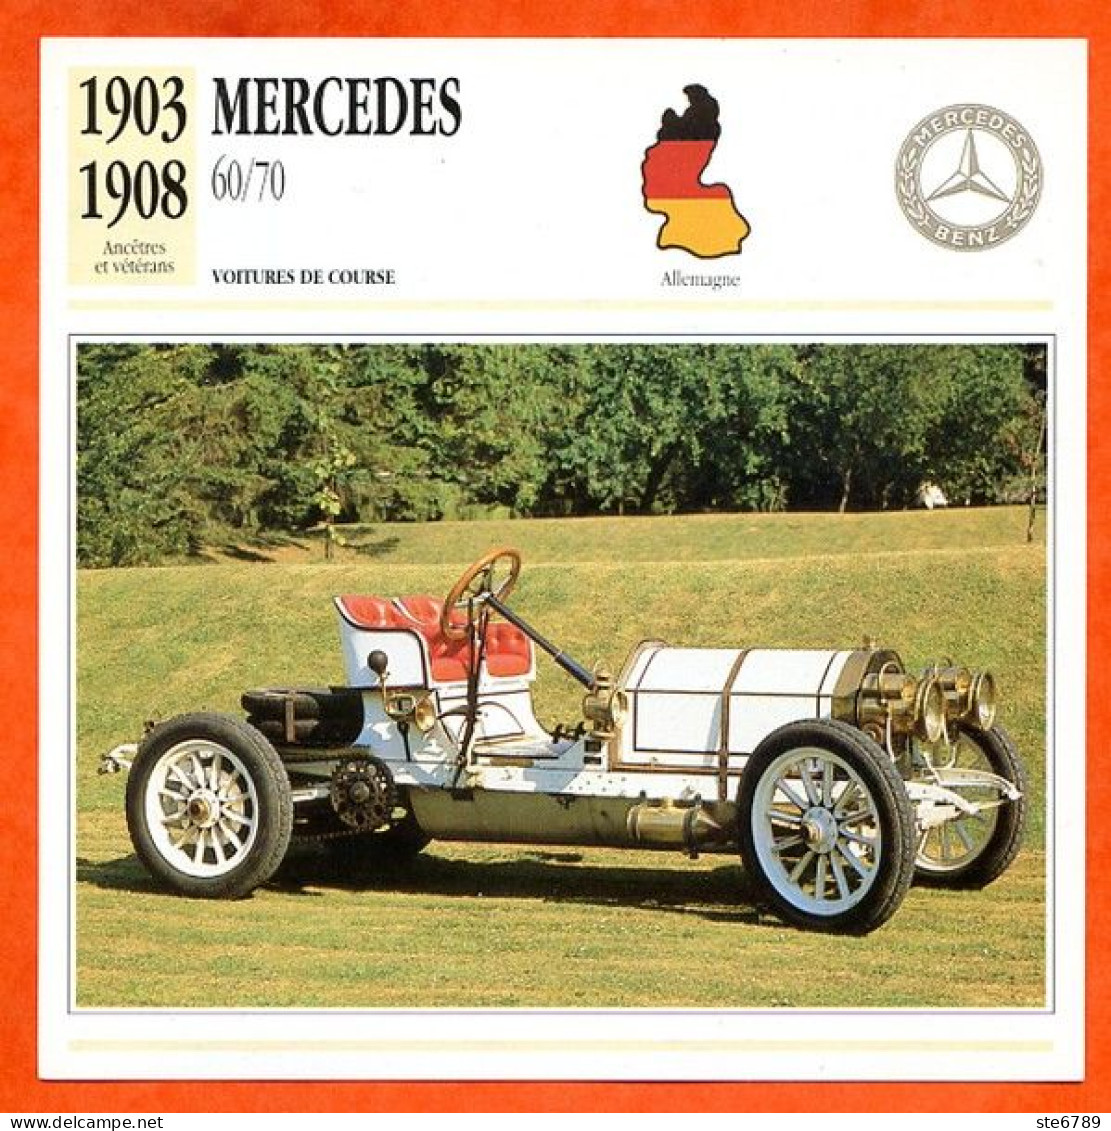 MERCEDES 60/70 1903 Voiture De Course Allemagne Fiche Technique Automobile - Auto's